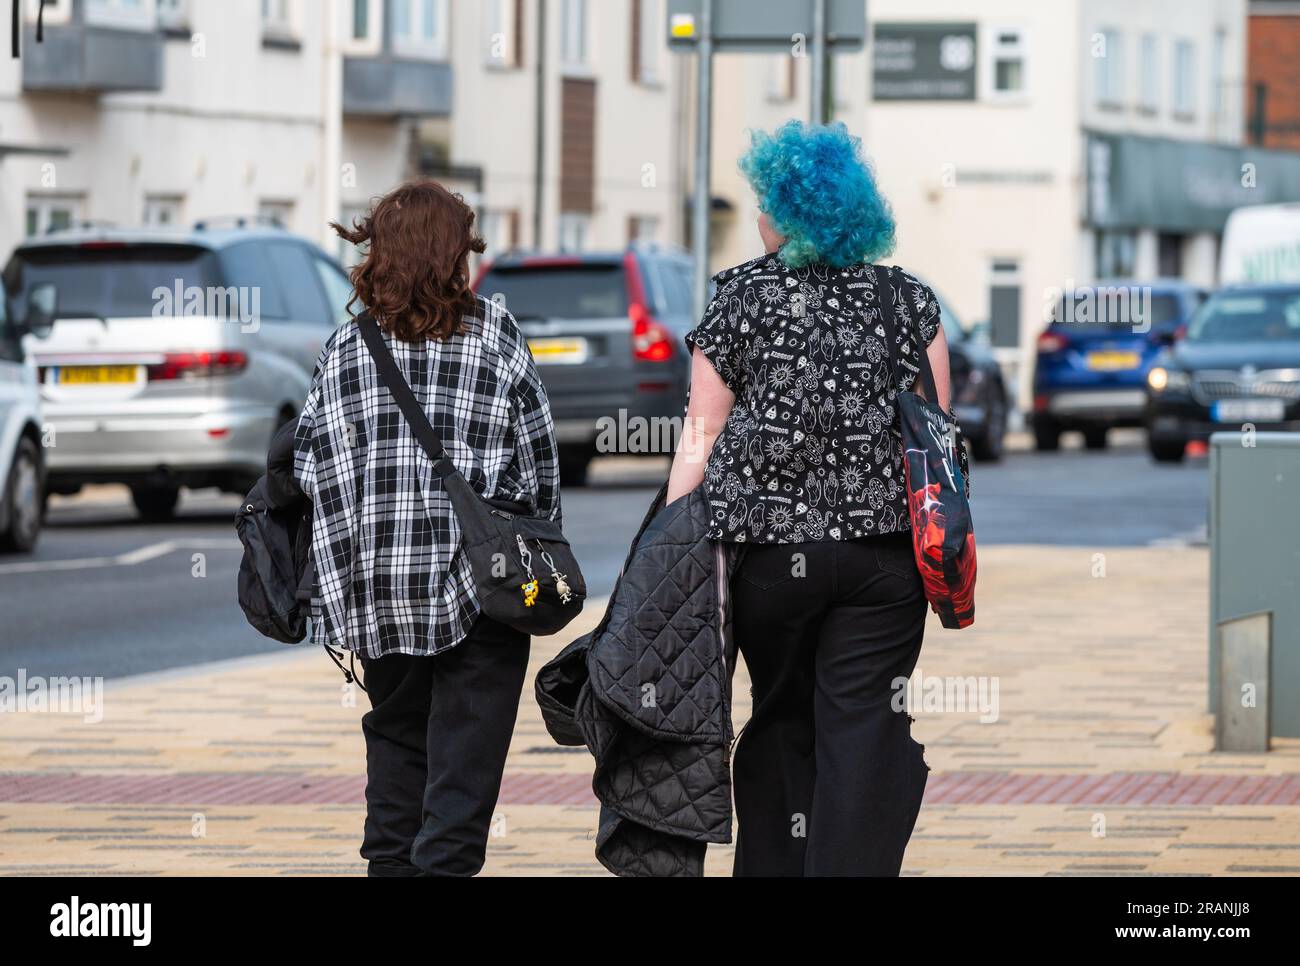 Zwei junge, moderne Frauen, möglicherweise Freunde, eine mit bunten blauen Haaren, die im Sommer in England auf einem Bürgersteig spaziert. Stockfoto